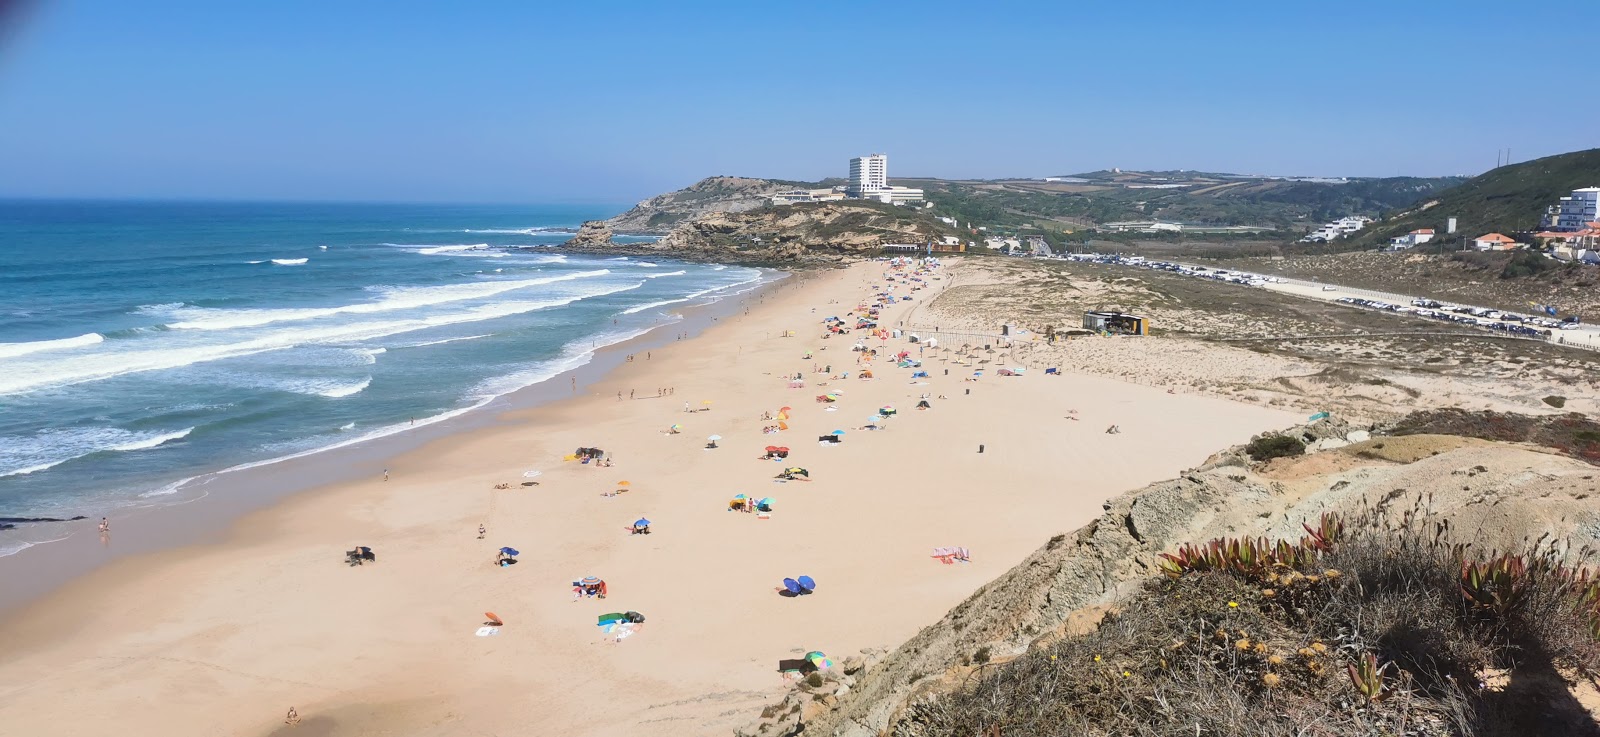 Φωτογραφία του Praia de Santa Rita με μακρά ευθεία ακτή